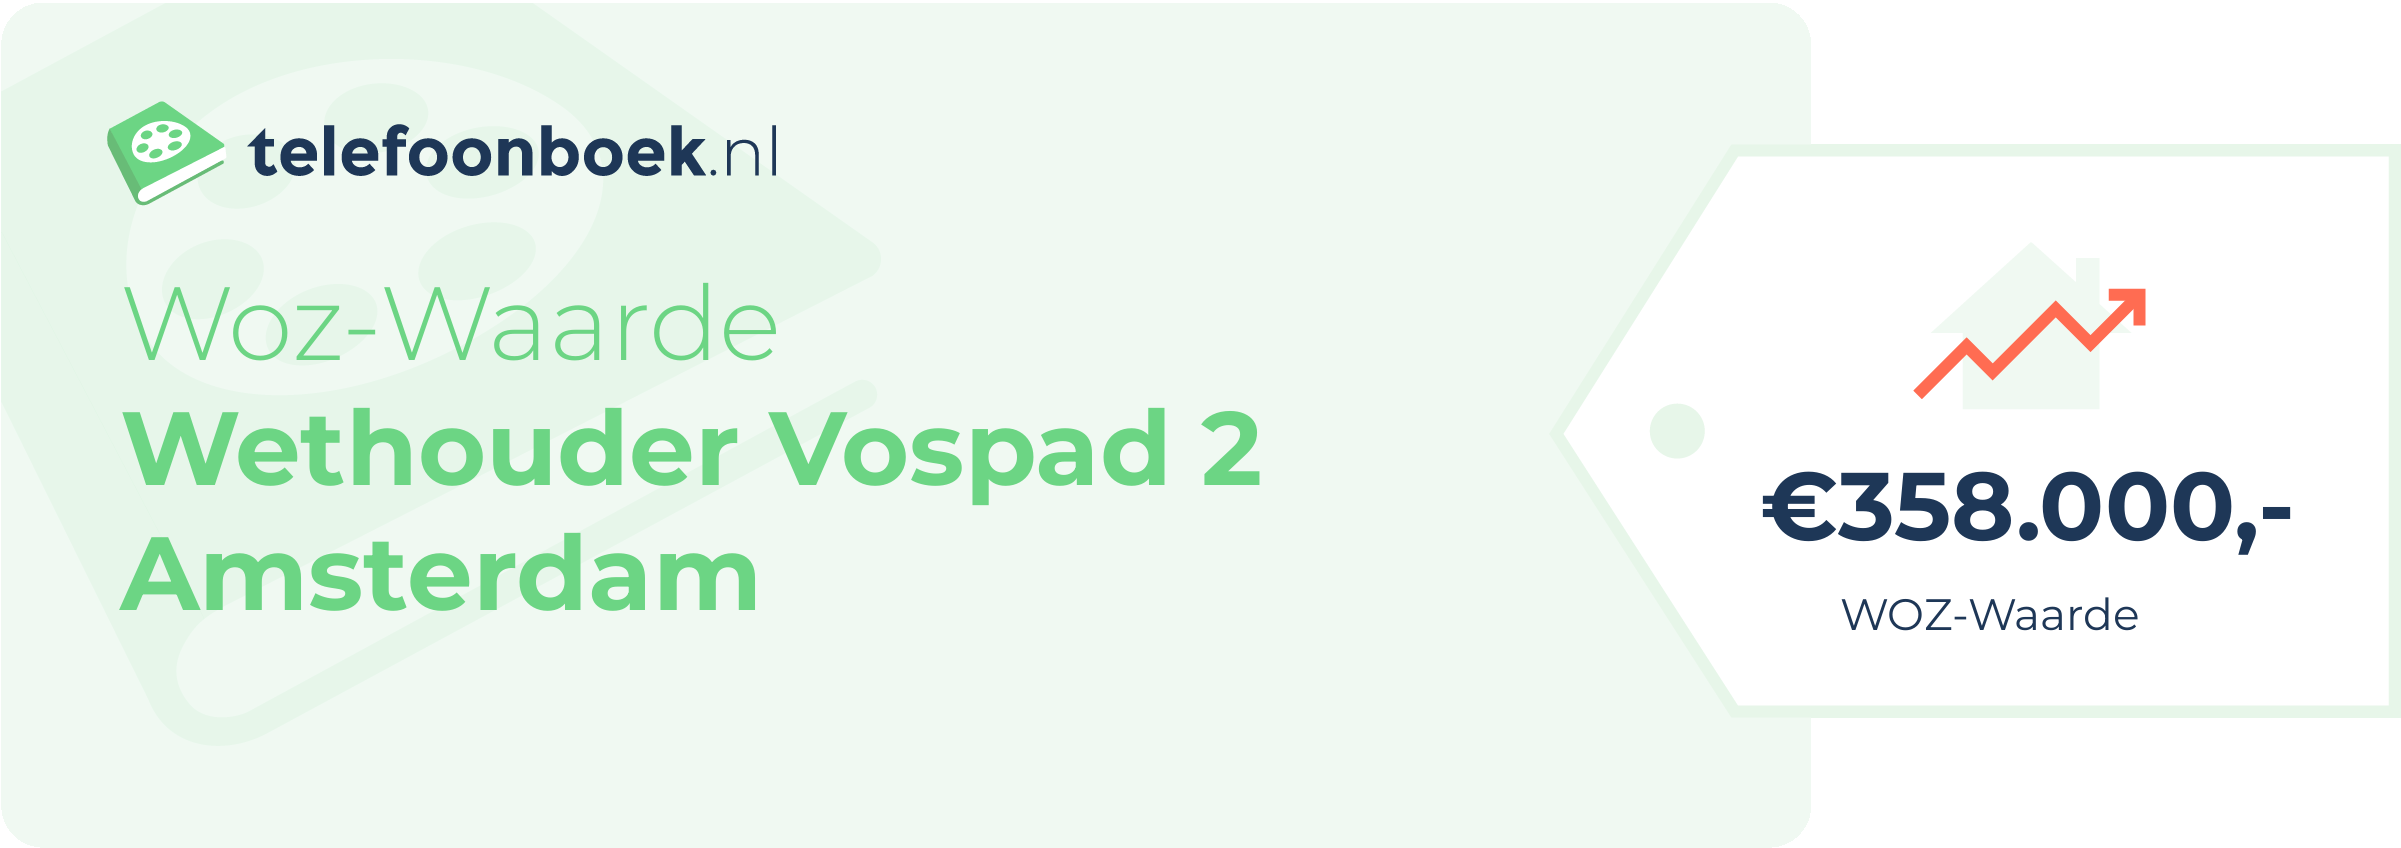 WOZ-waarde Wethouder Vospad 2 Amsterdam